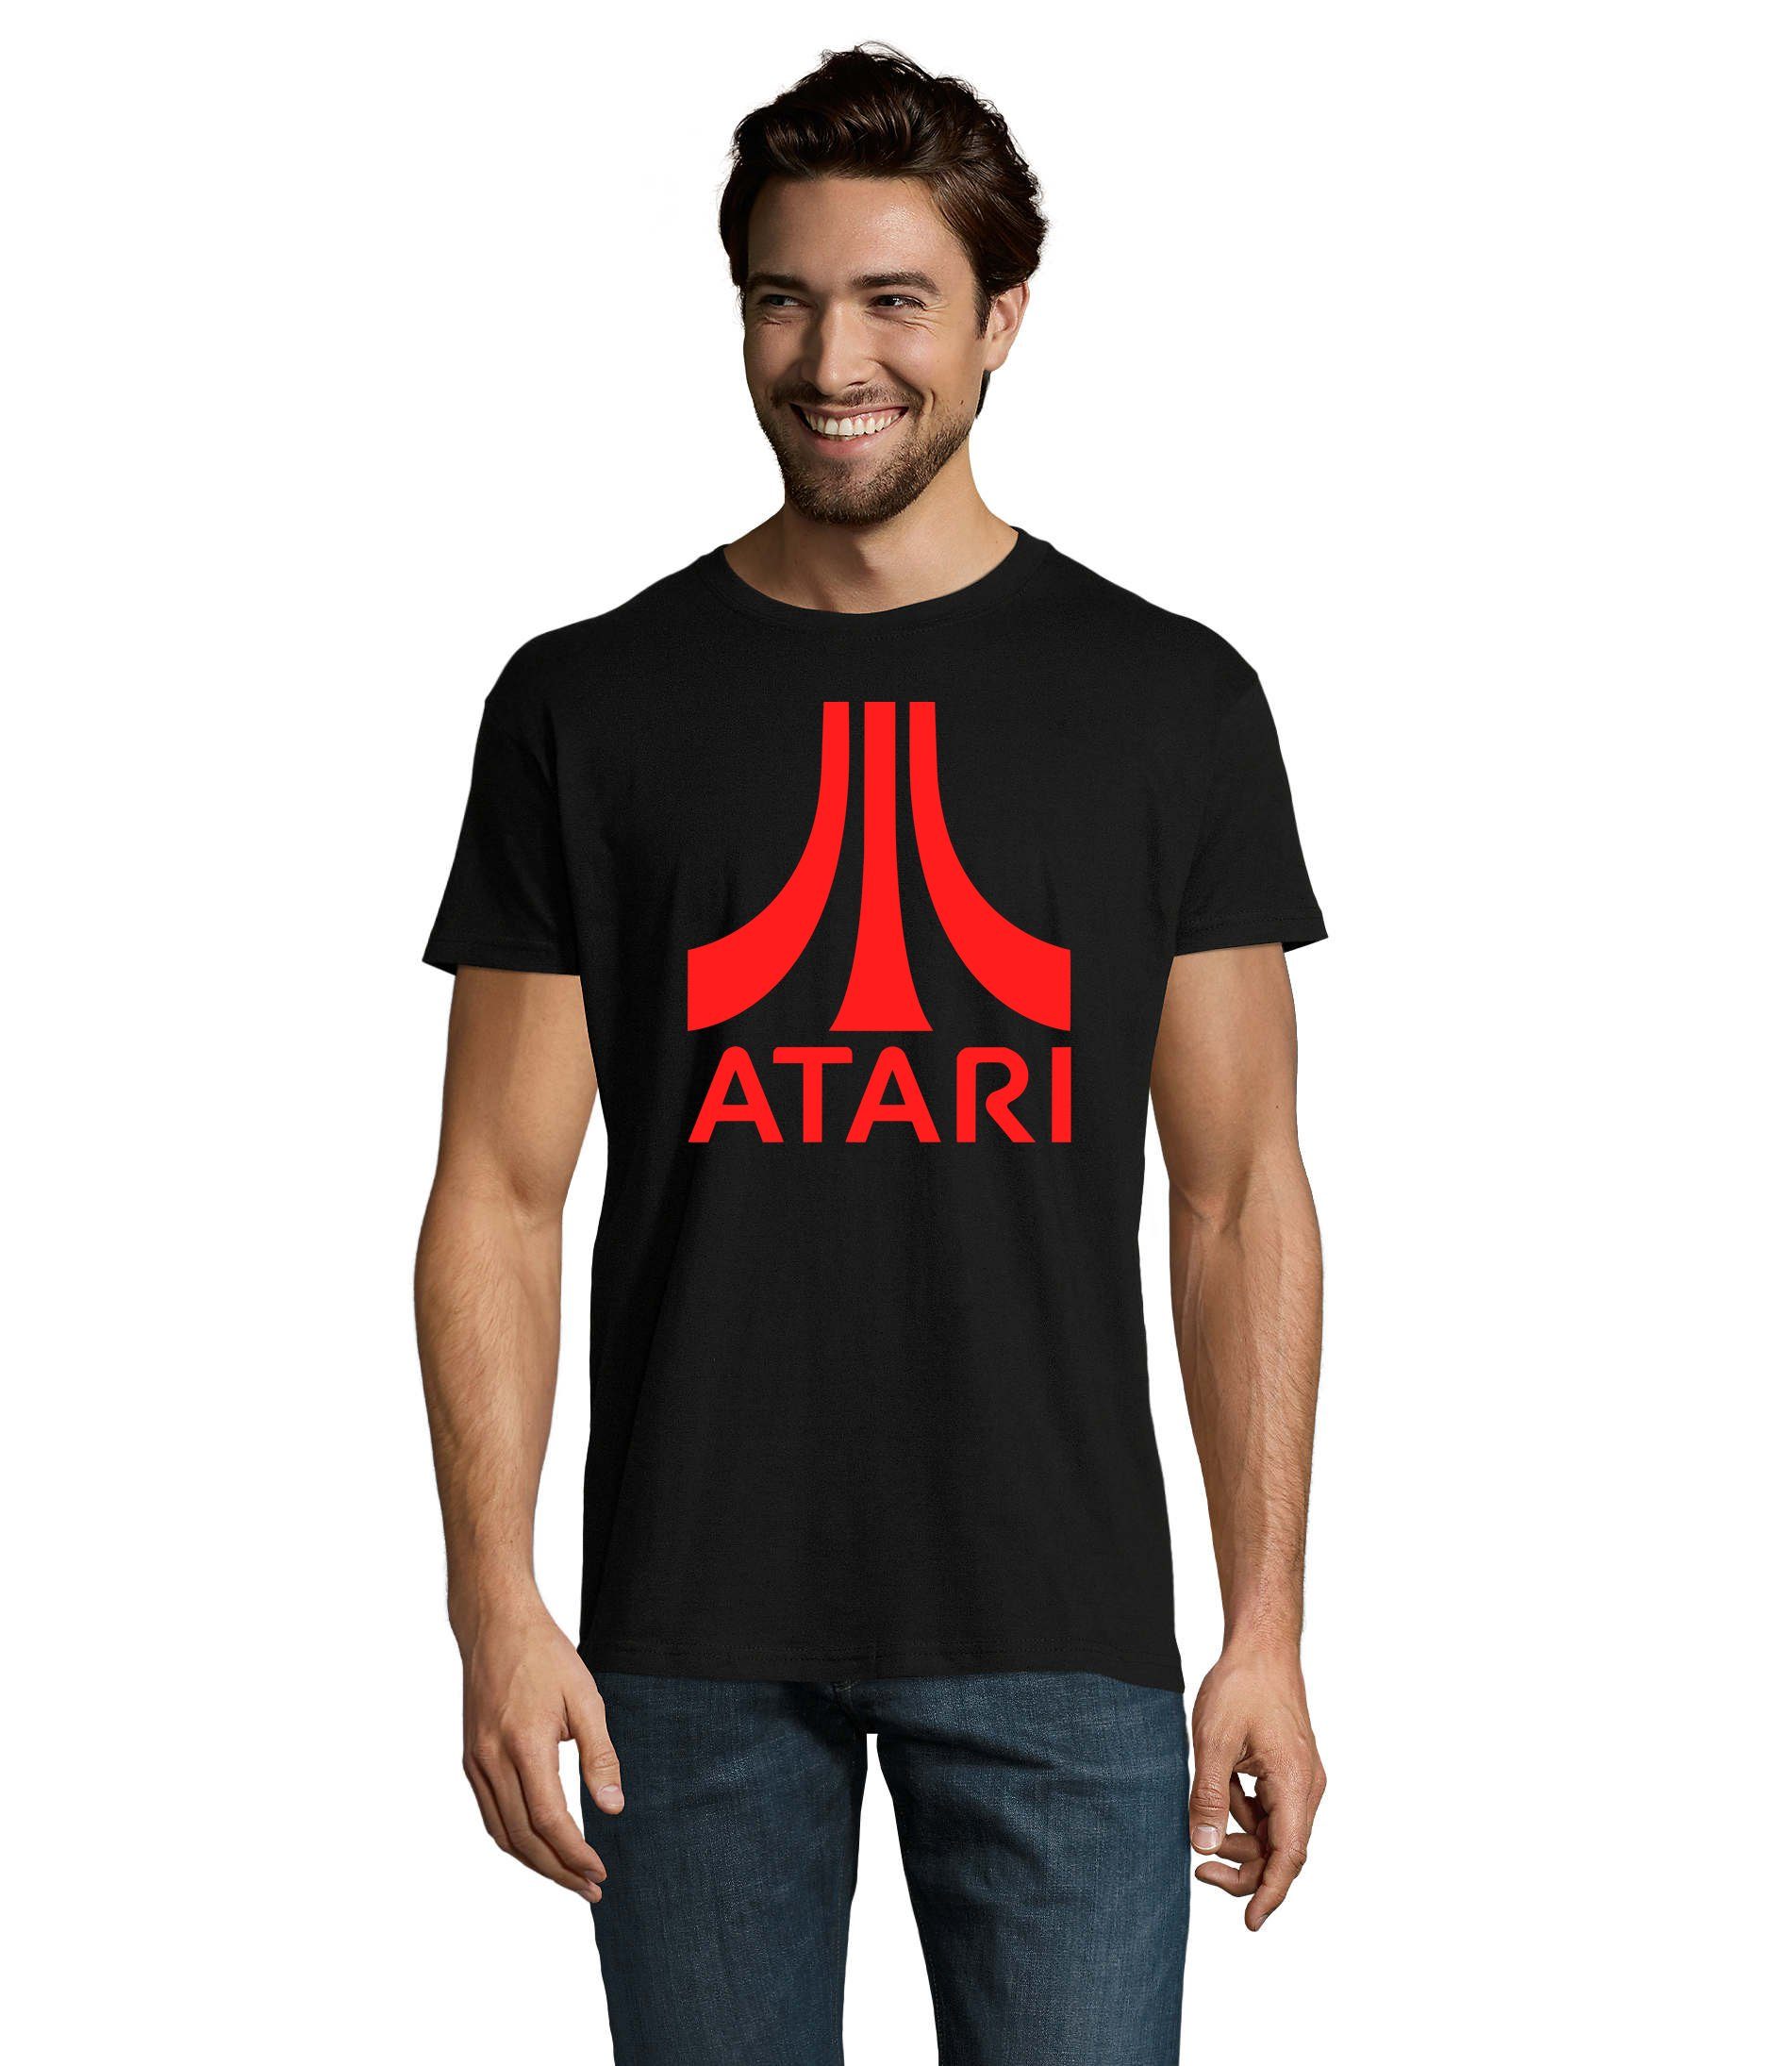 Blondie & Brownie T-Shirt Herren Atari Gaming Konsole Super Retro Spiele